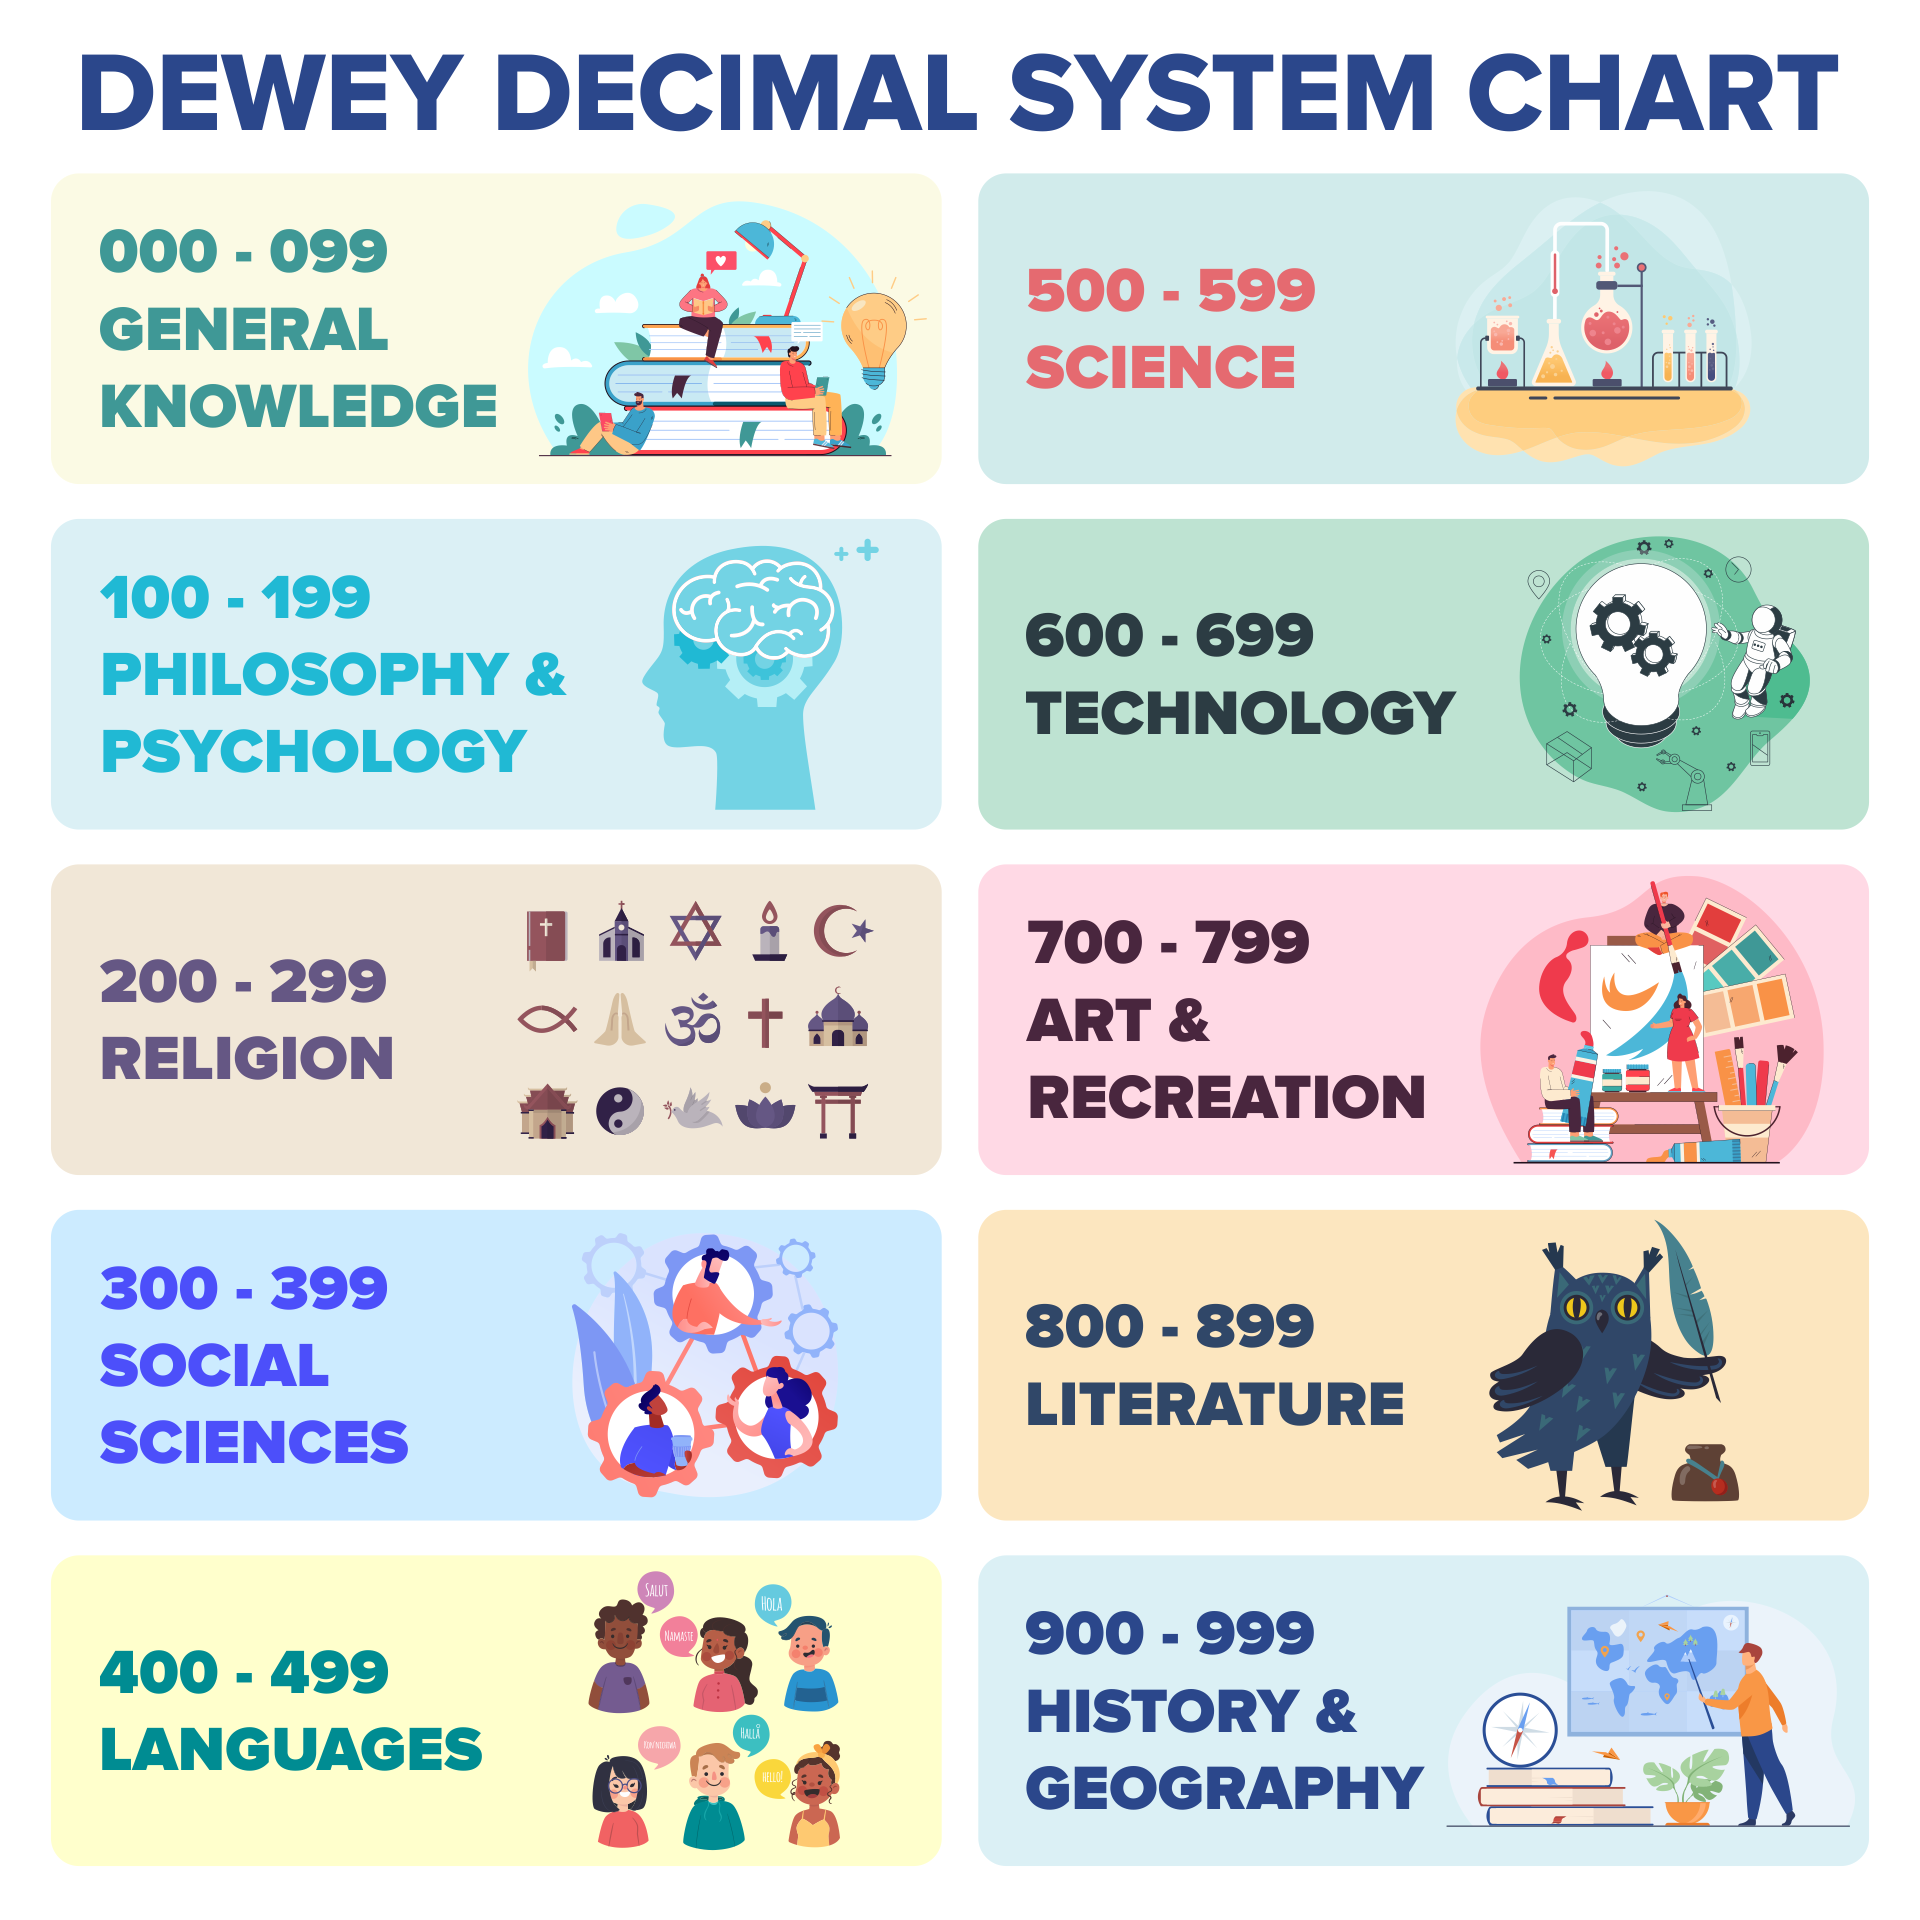 Dewey Decimal Classification System Chart